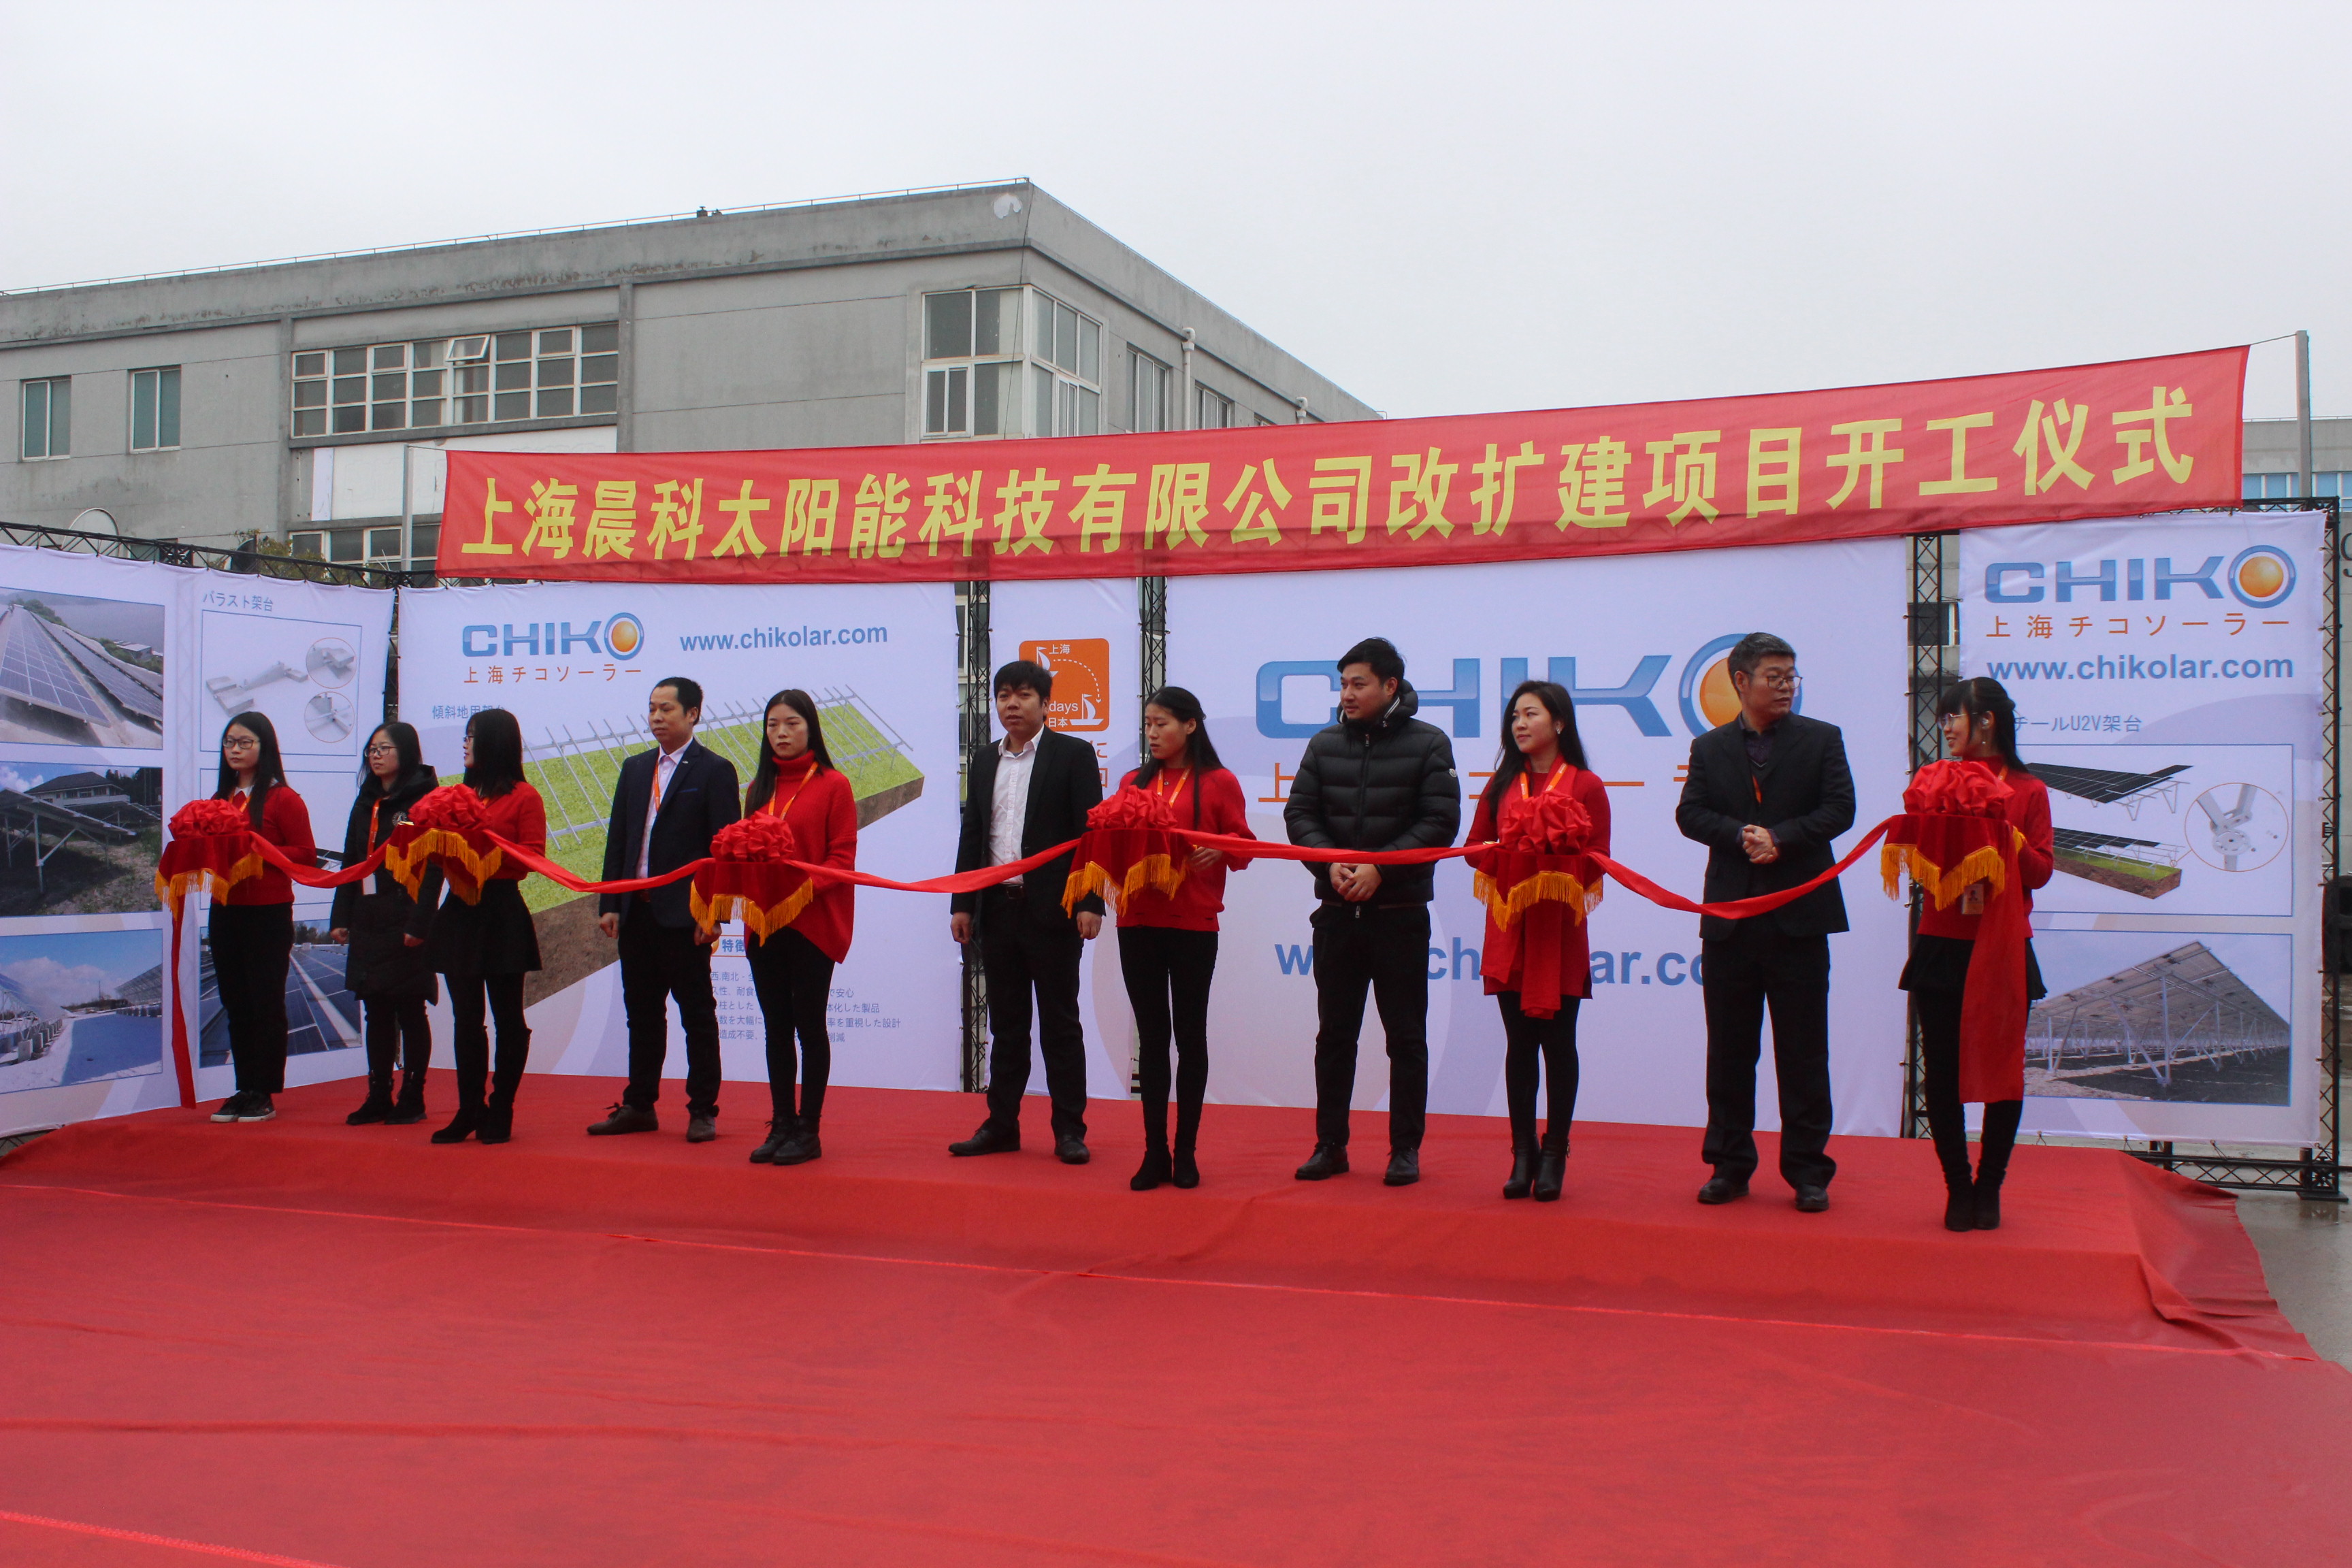 上海チコソーラーテクノロジー有限公司改増プロジェクト起工式が順調に行われたことを熱烈に祝った